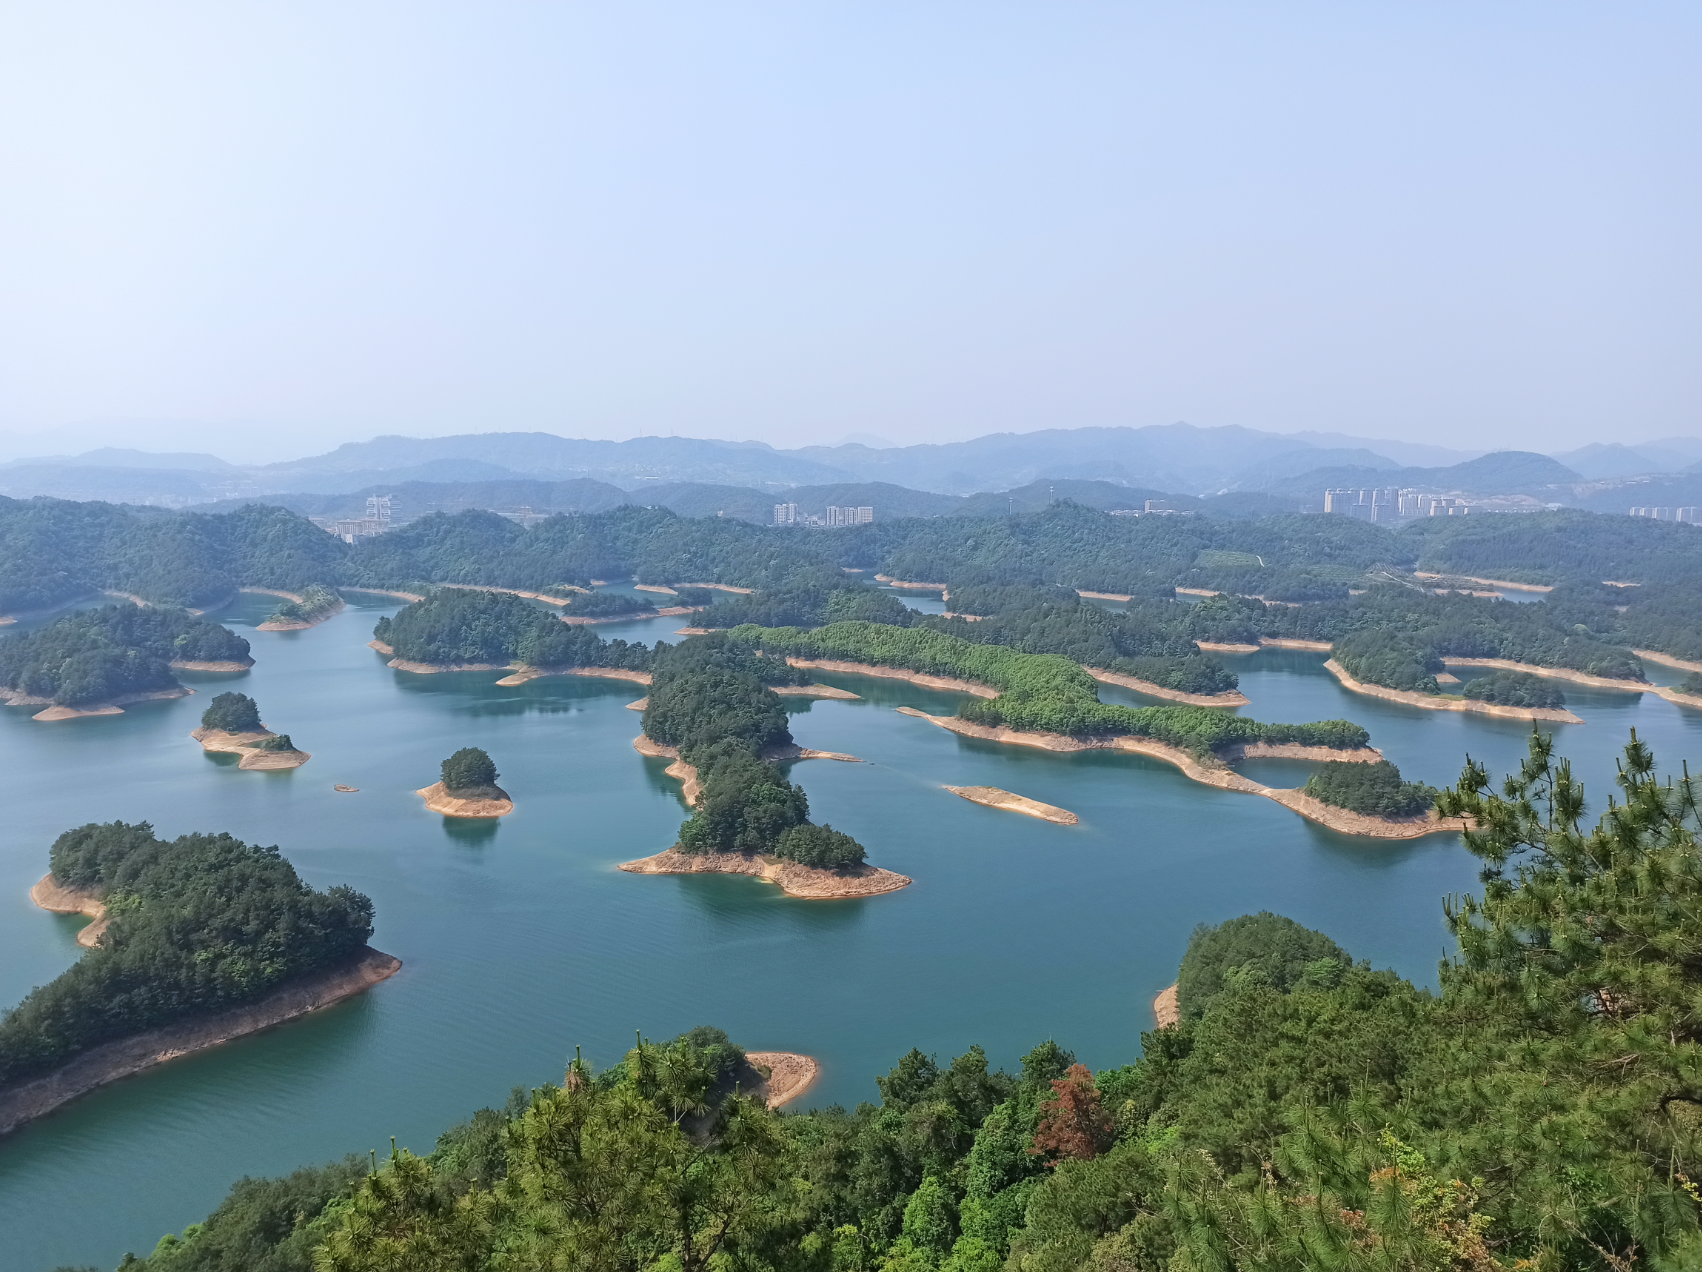 Dive sites: Qiandao Lake / Xin'anjiang Reservoir